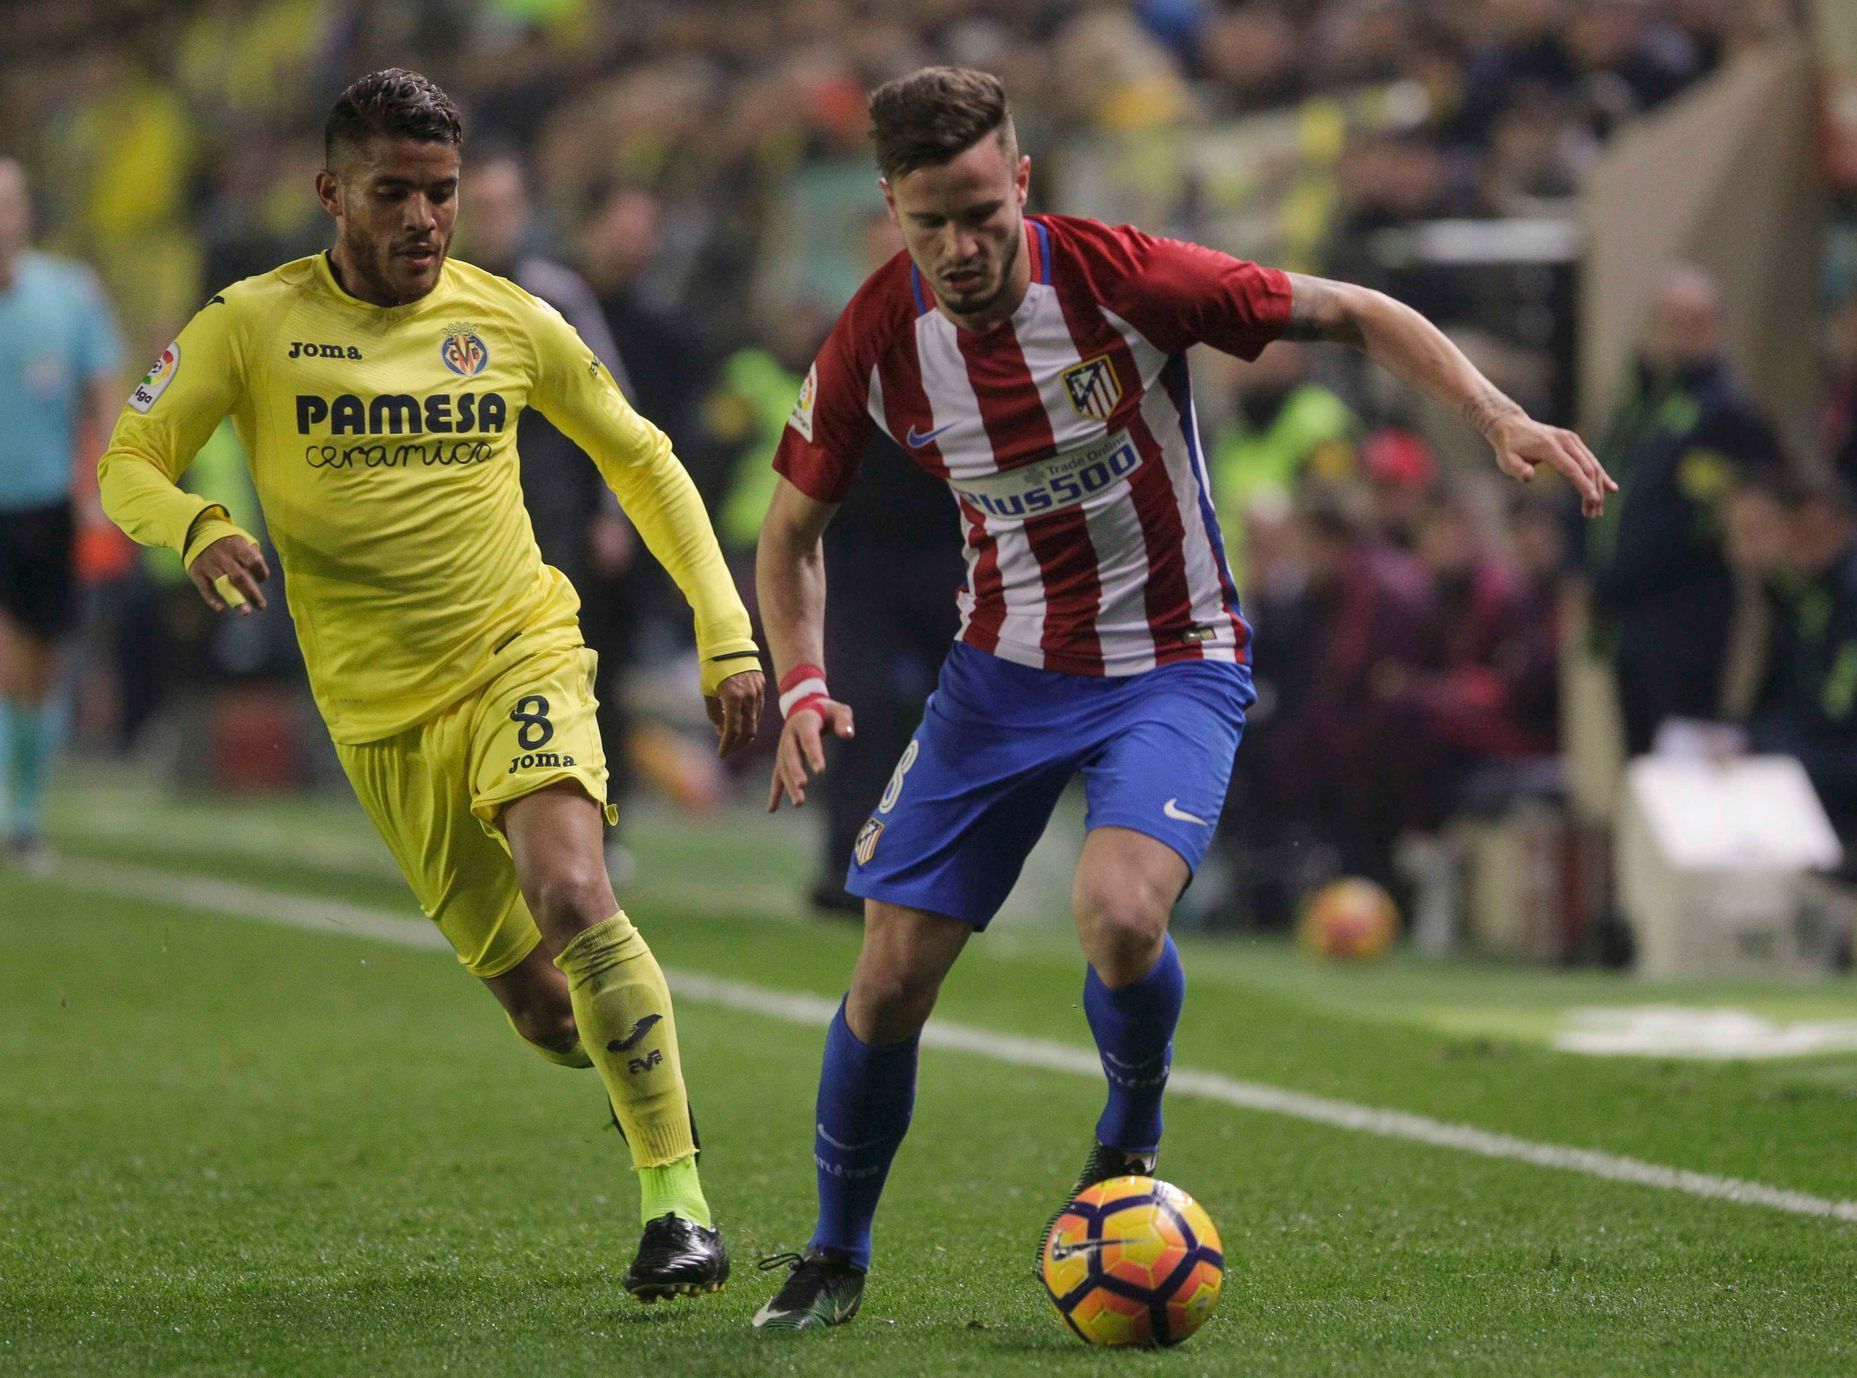 La Liga: Villarreal vs. Atlético Madrid